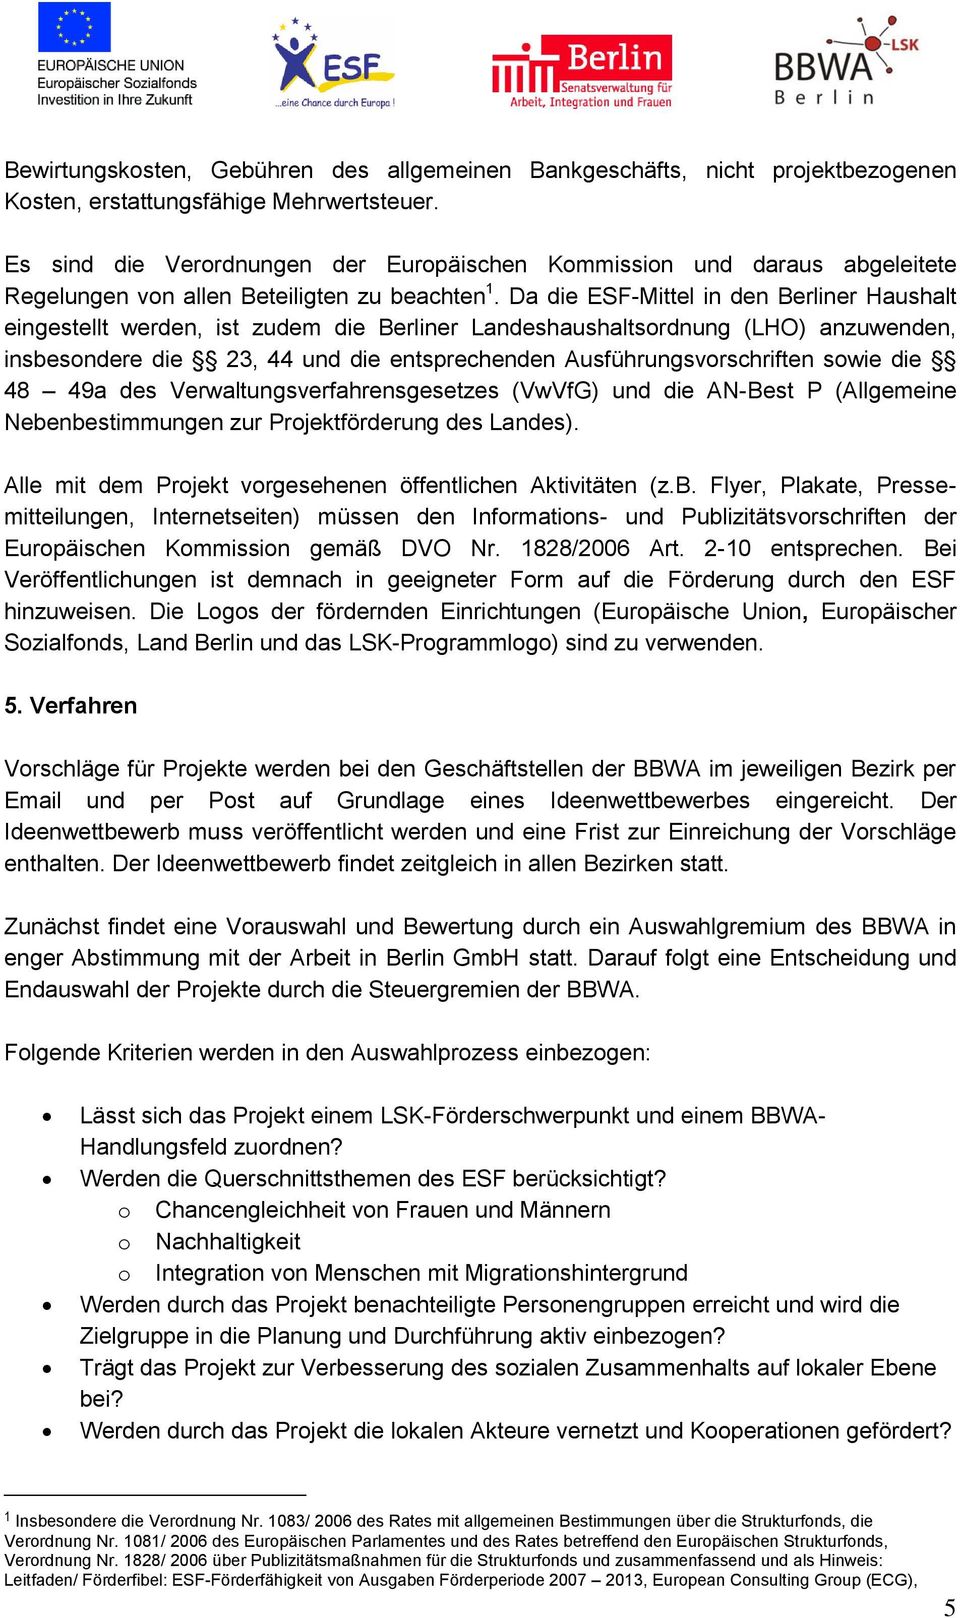 Da die ESF-Mittel in den Berliner Haushalt eingestellt werden, ist zudem die Berliner Landeshaushaltsordnung (LHO) anzuwenden, insbesondere die 23, 44 und die entsprechenden Ausführungsvorschriften